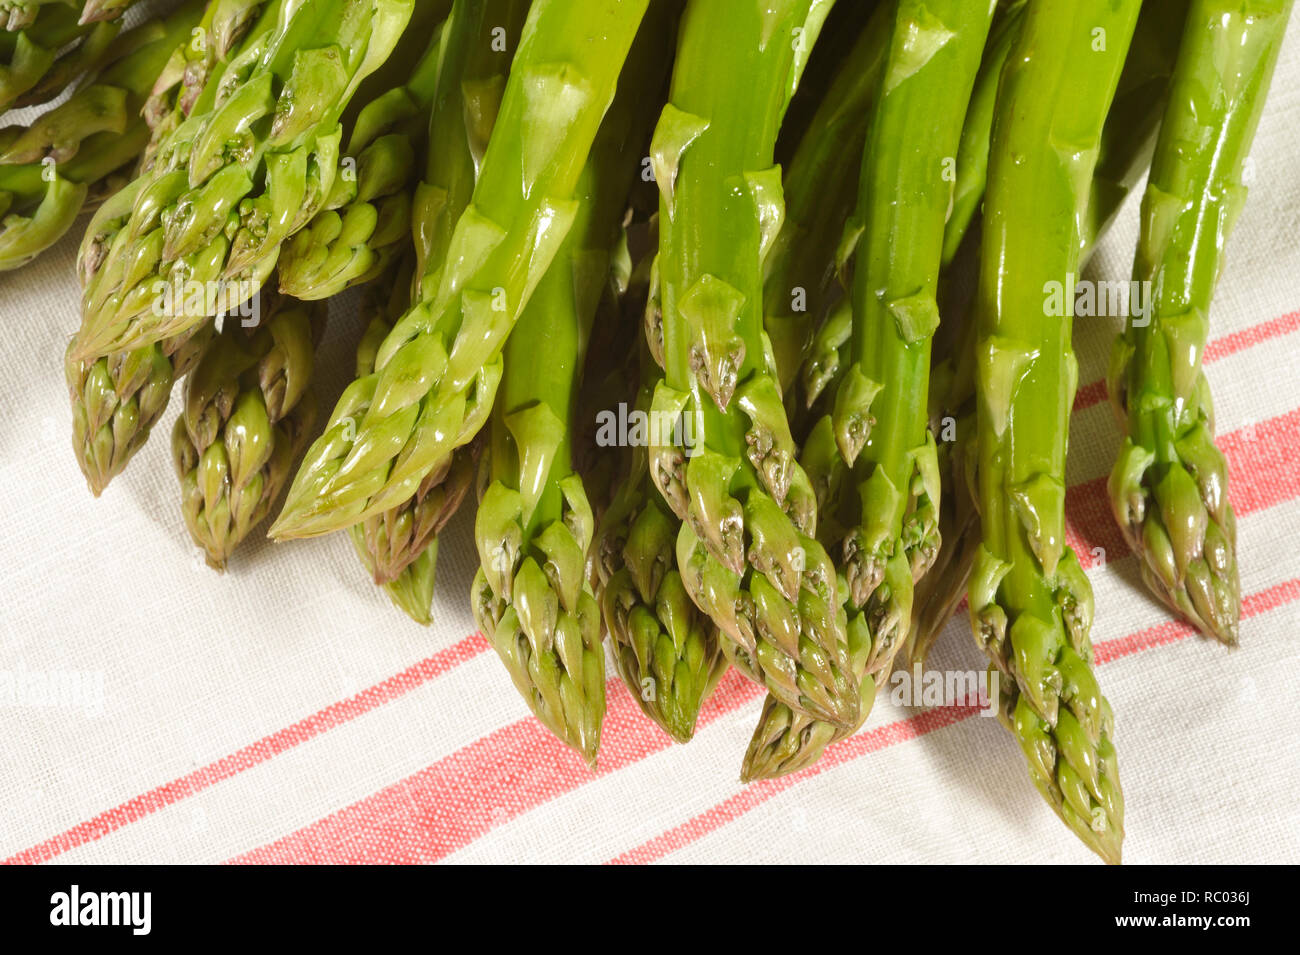 Grüner Stangenspargel | asparago verde Foto Stock